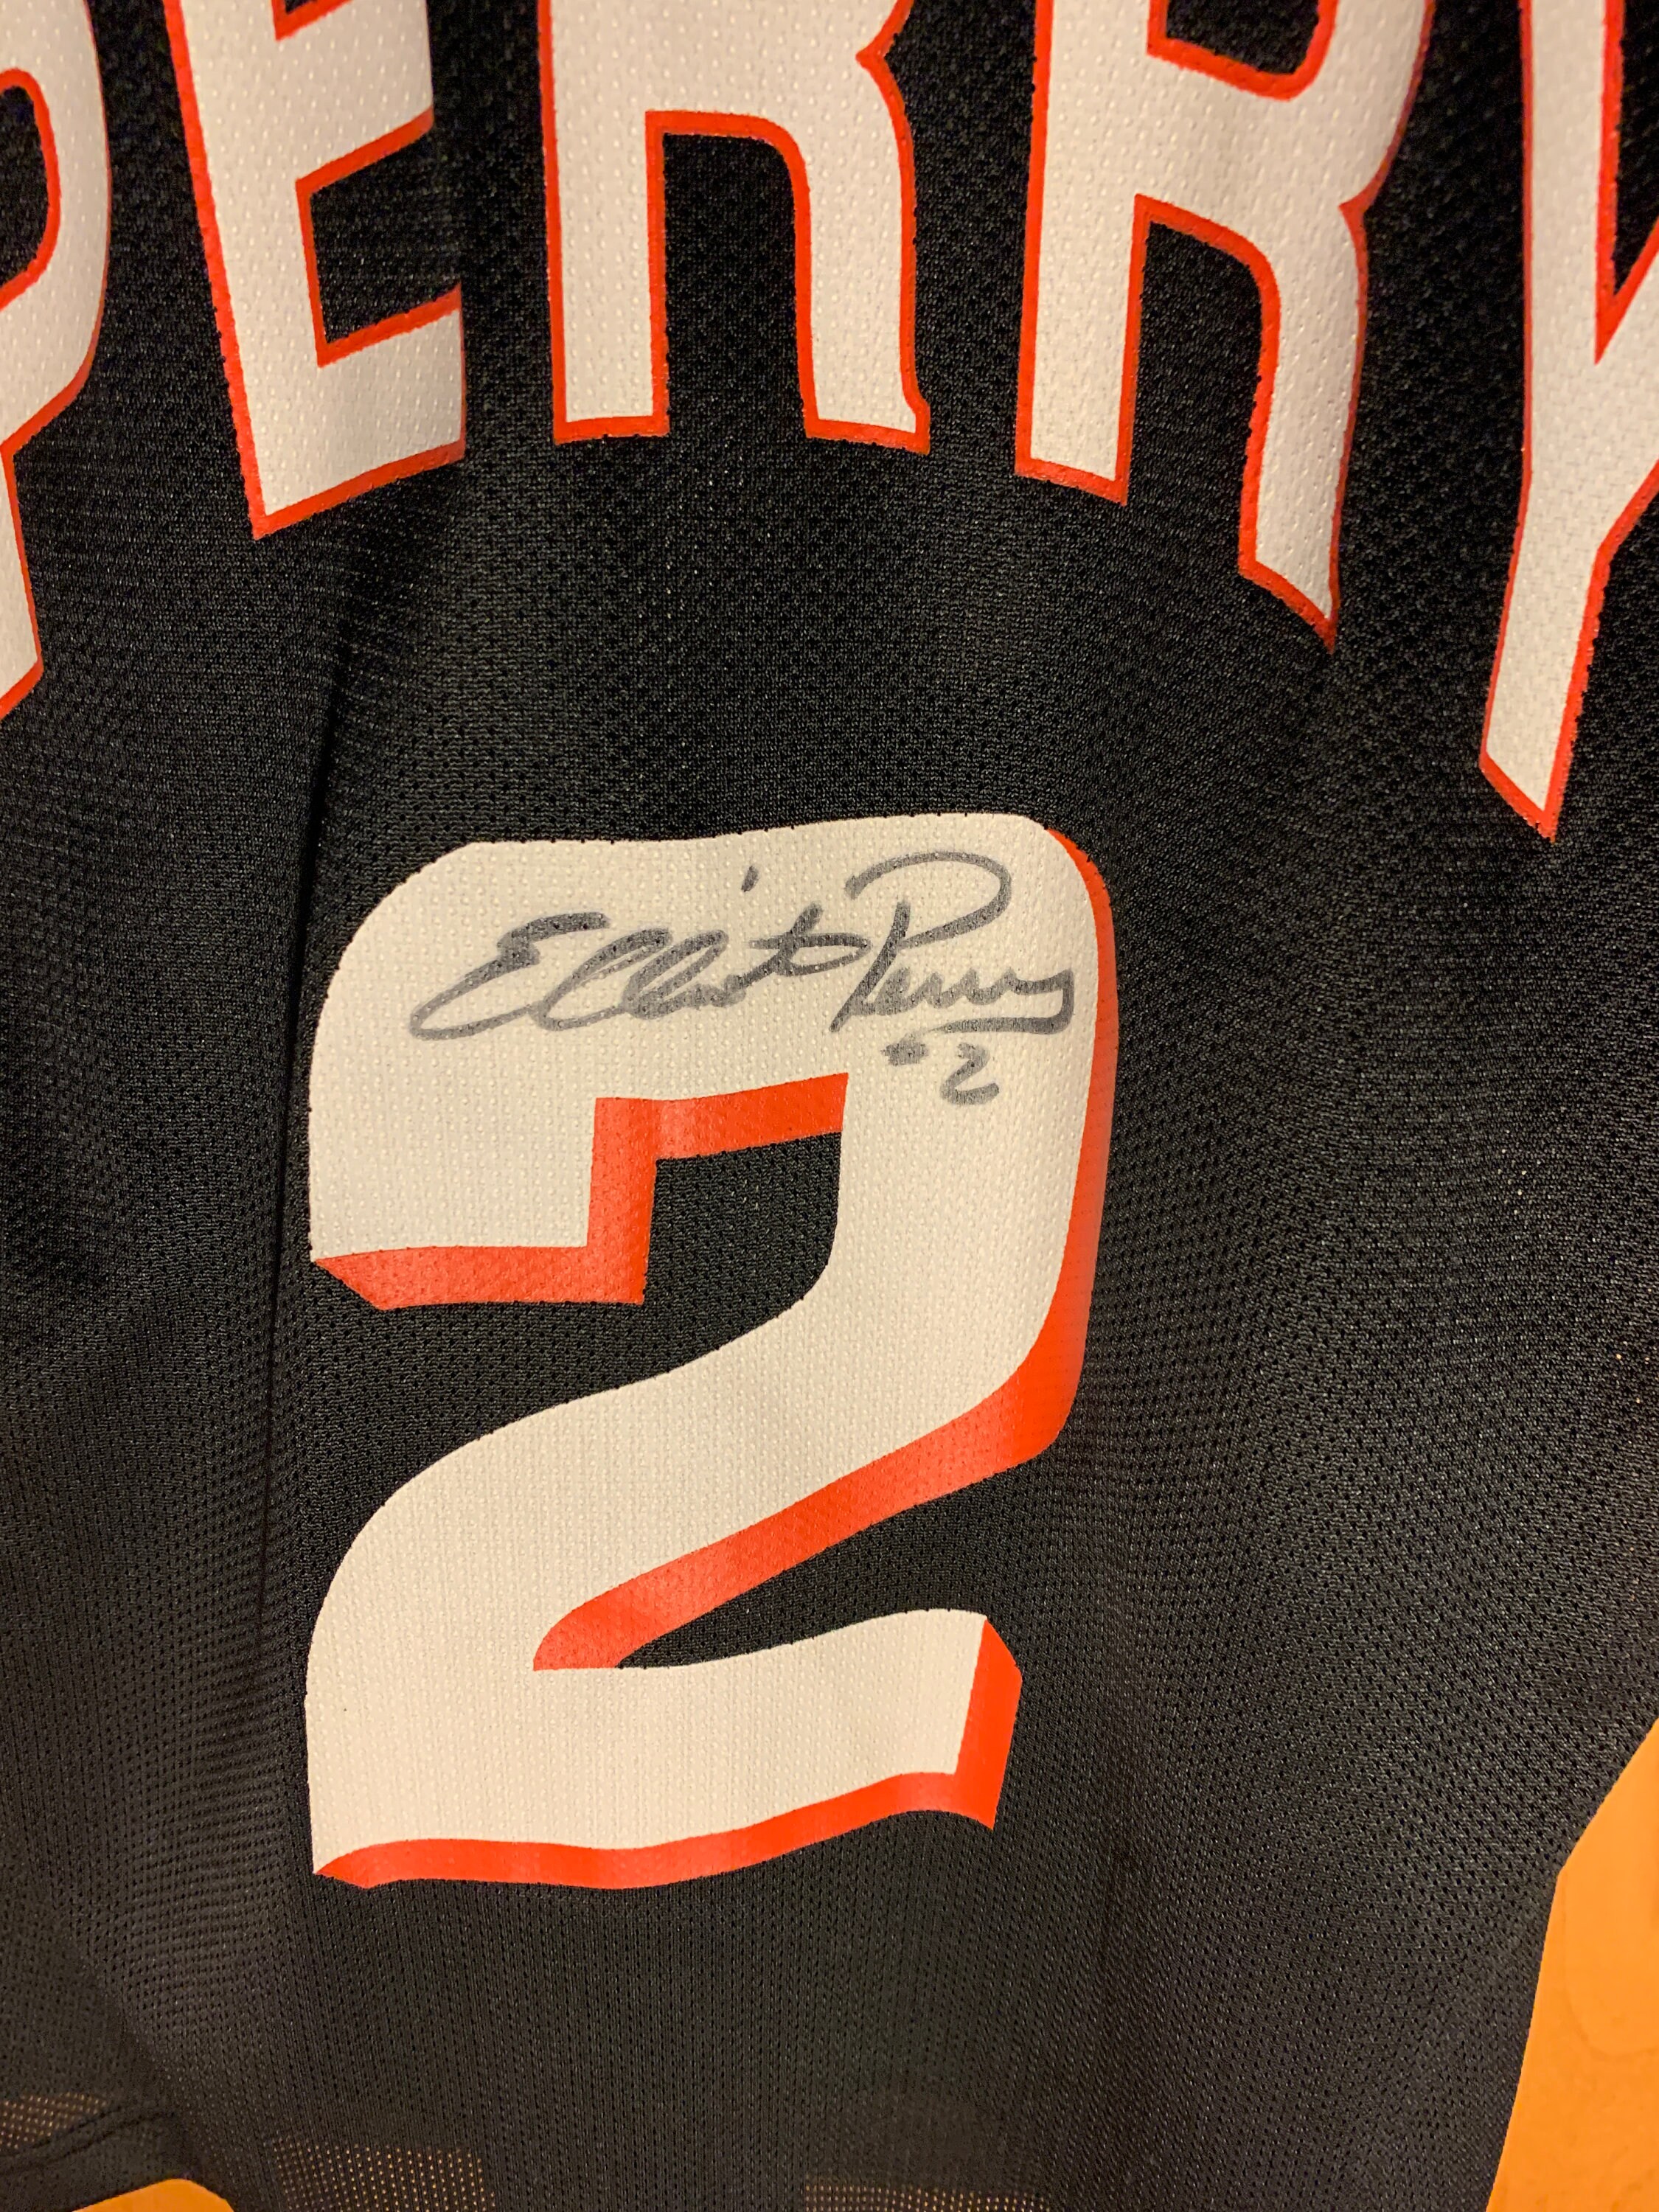 Vintage Phoenix Suns Autographed Elliot Perry Champion 